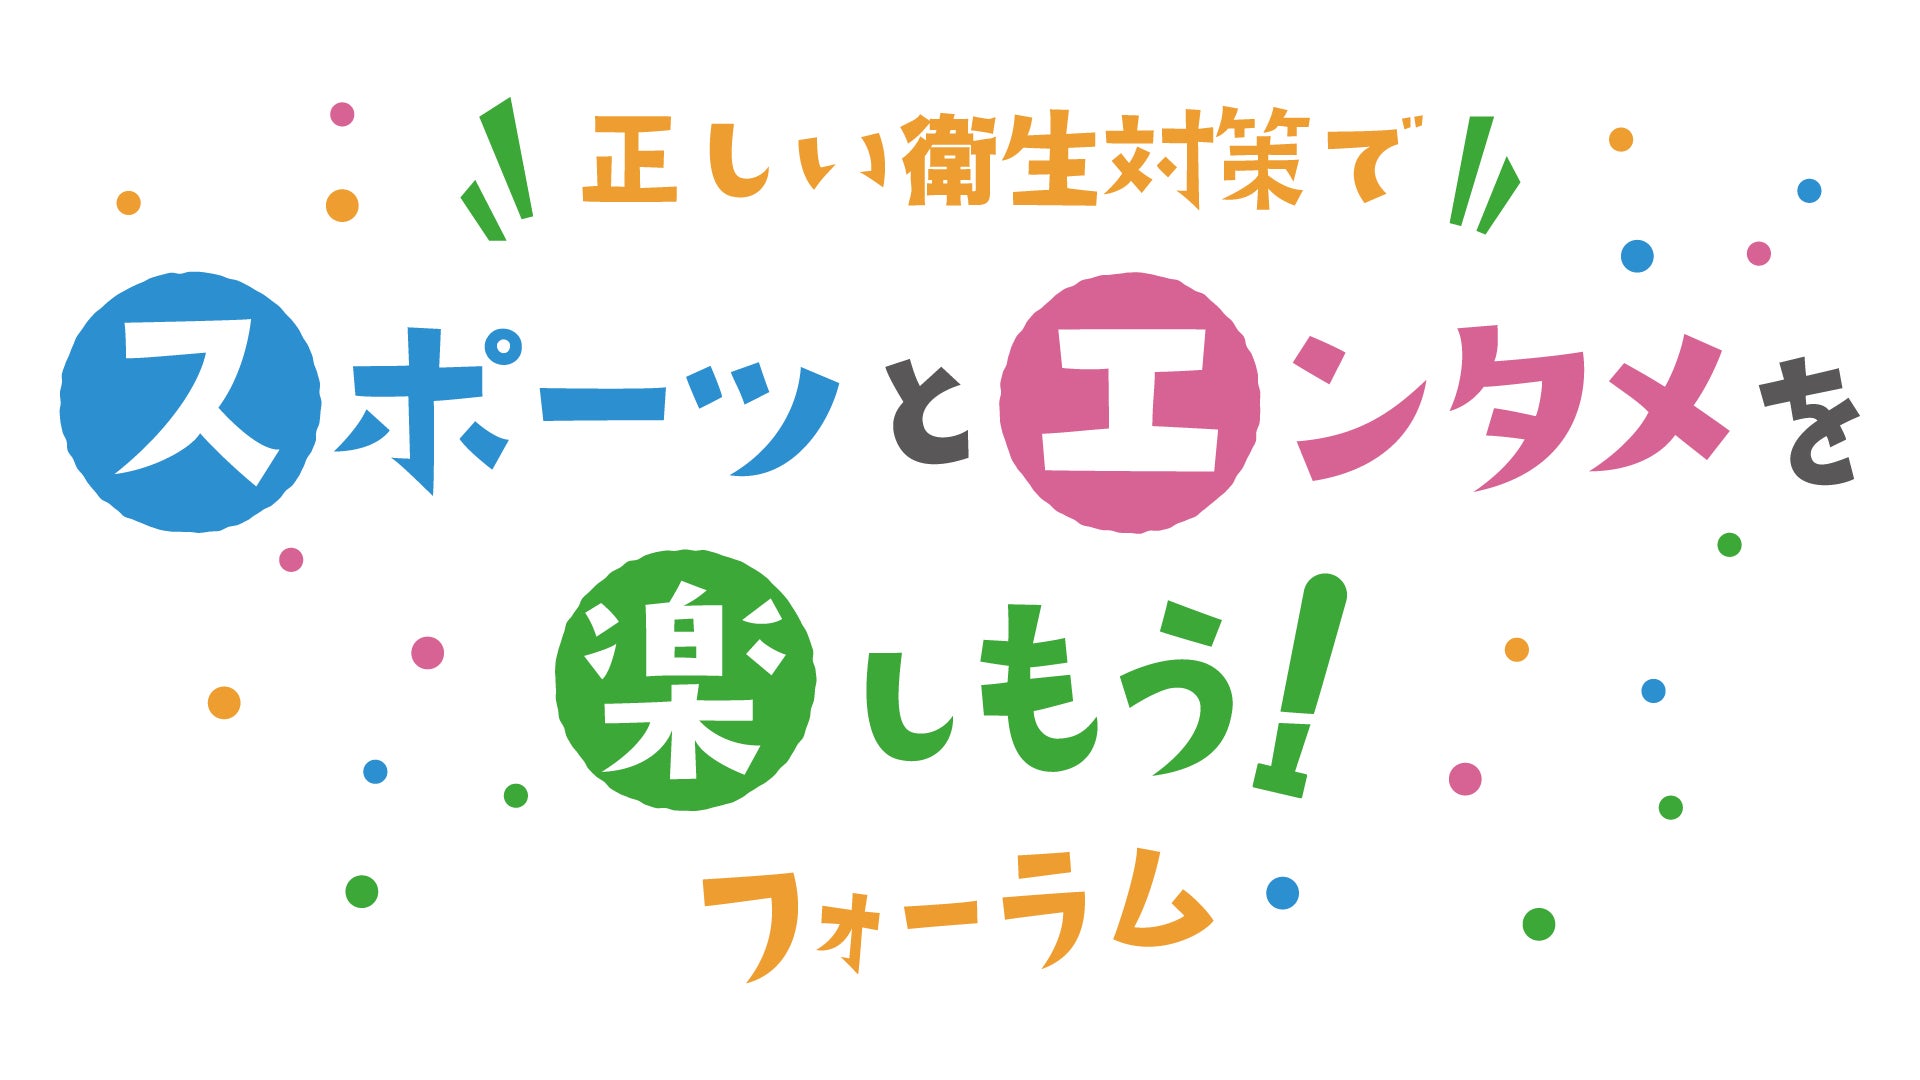 日本テレビ初NFTオークション番組「デジセリ」3月17日(木)深夜24:59より2週連続放送決定！